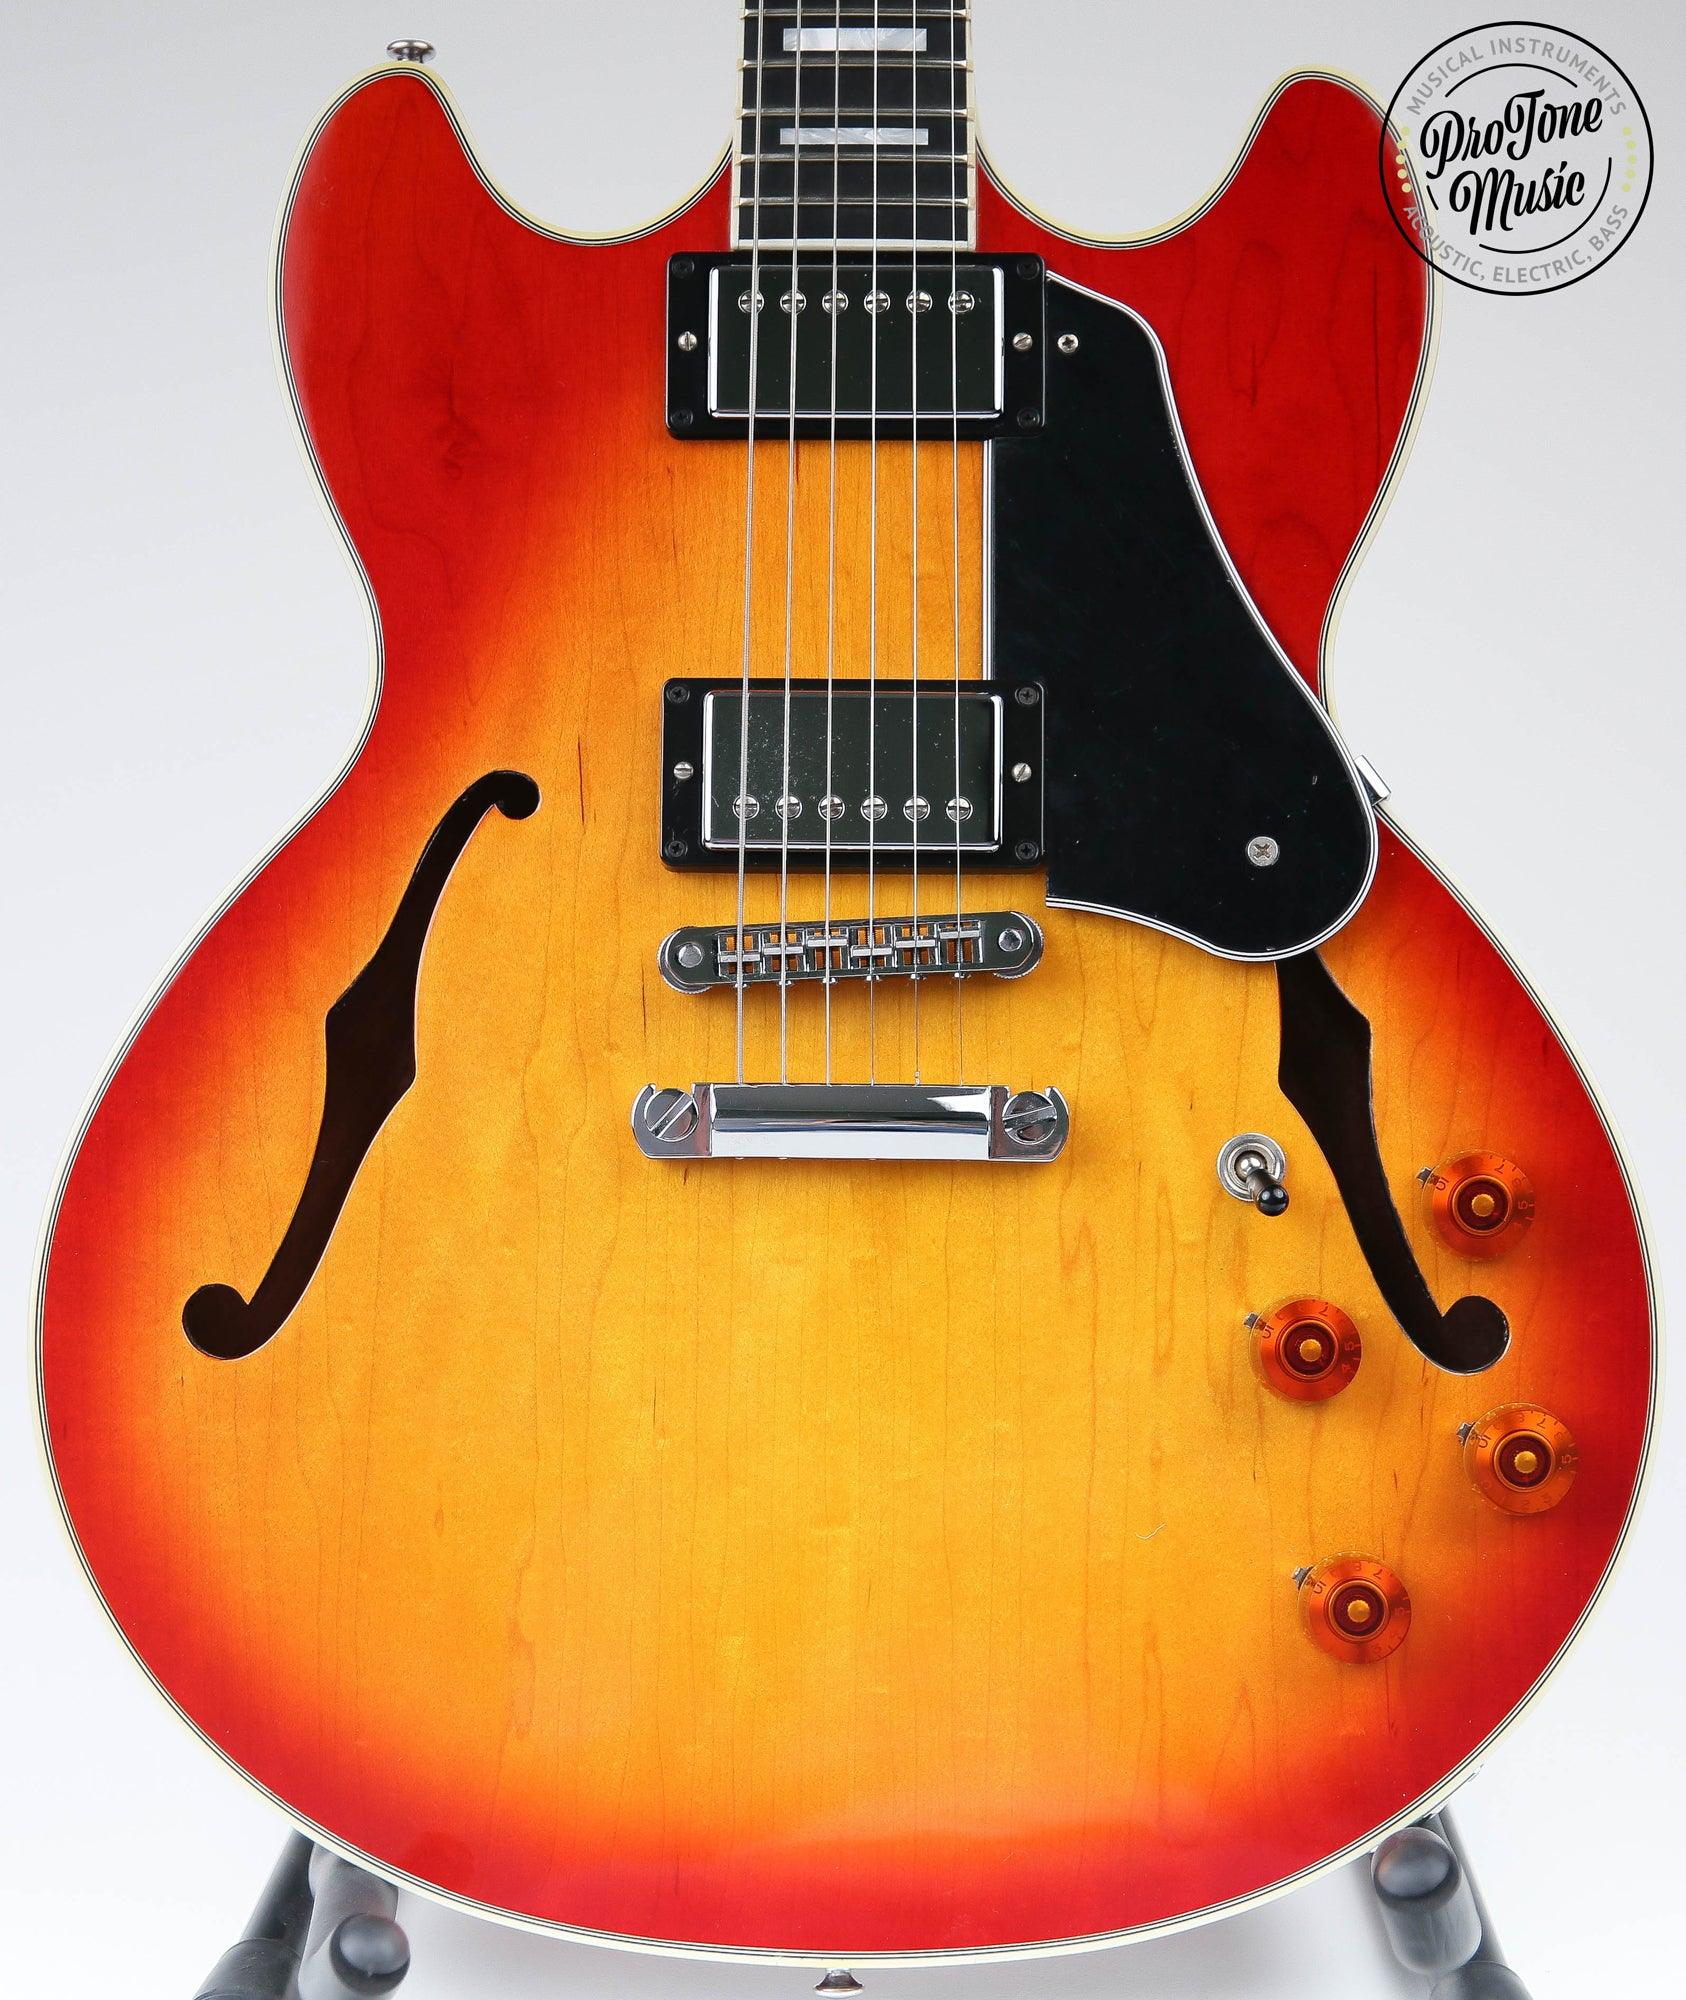 2012 Gibson USA Midtown Custom Cherry Sunburst & Gibson Hard Case